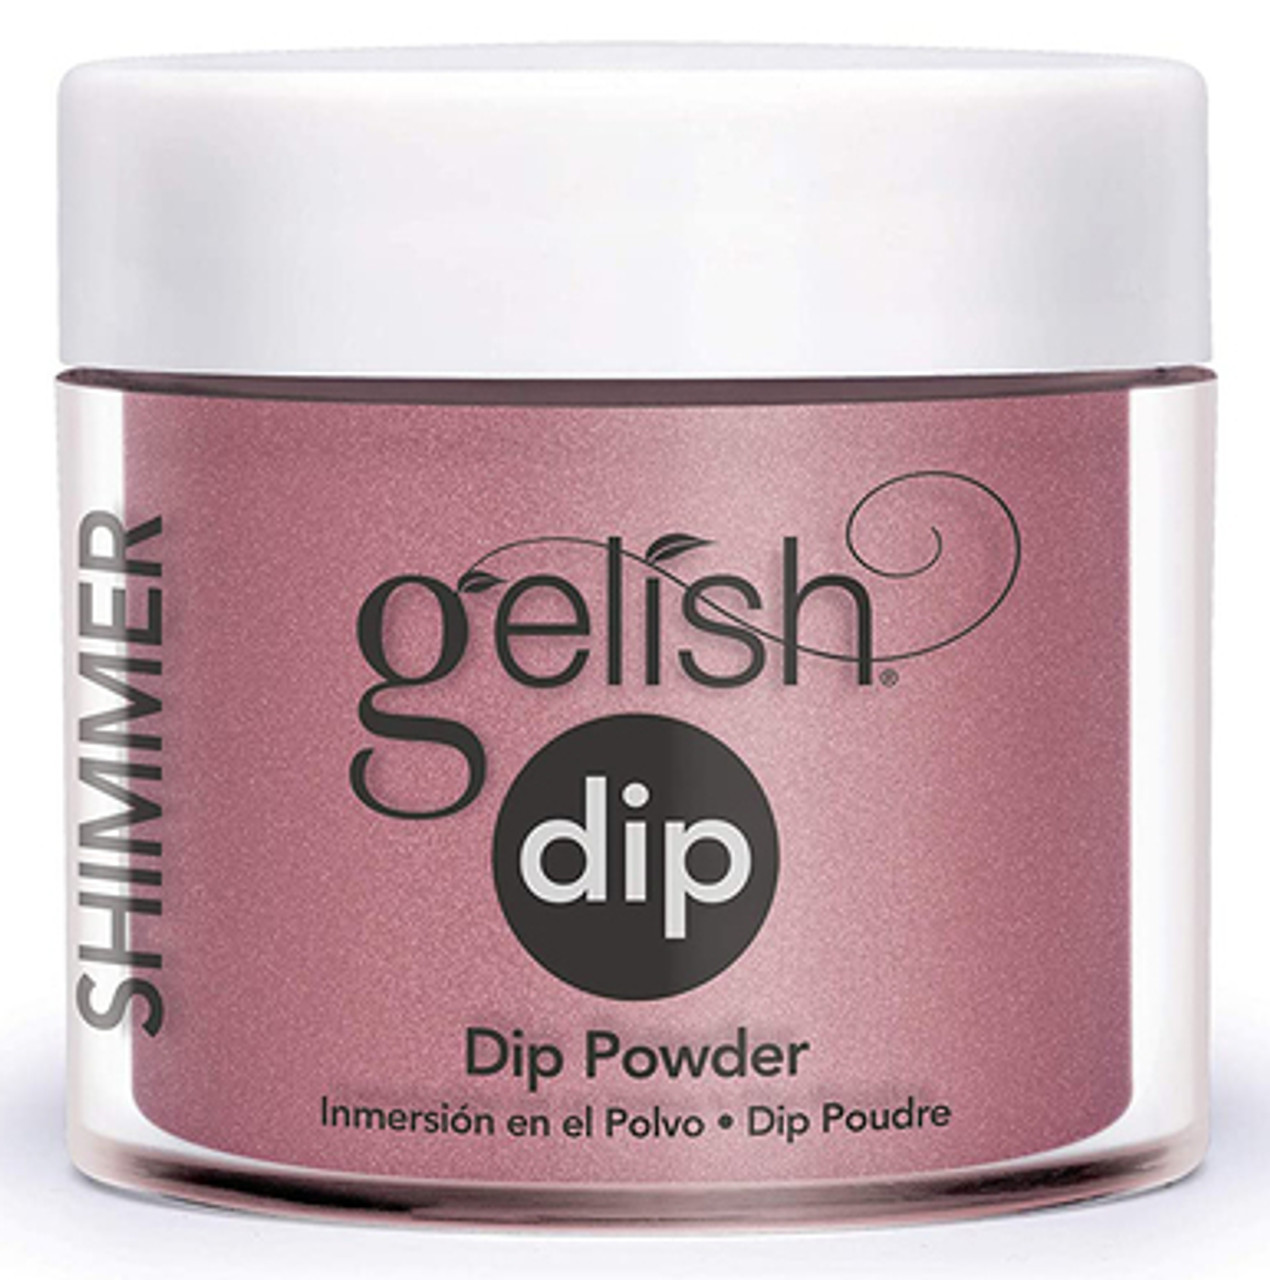 Gelish Dip Powder Tex'as Me Later - 0.8 oz / 23 g